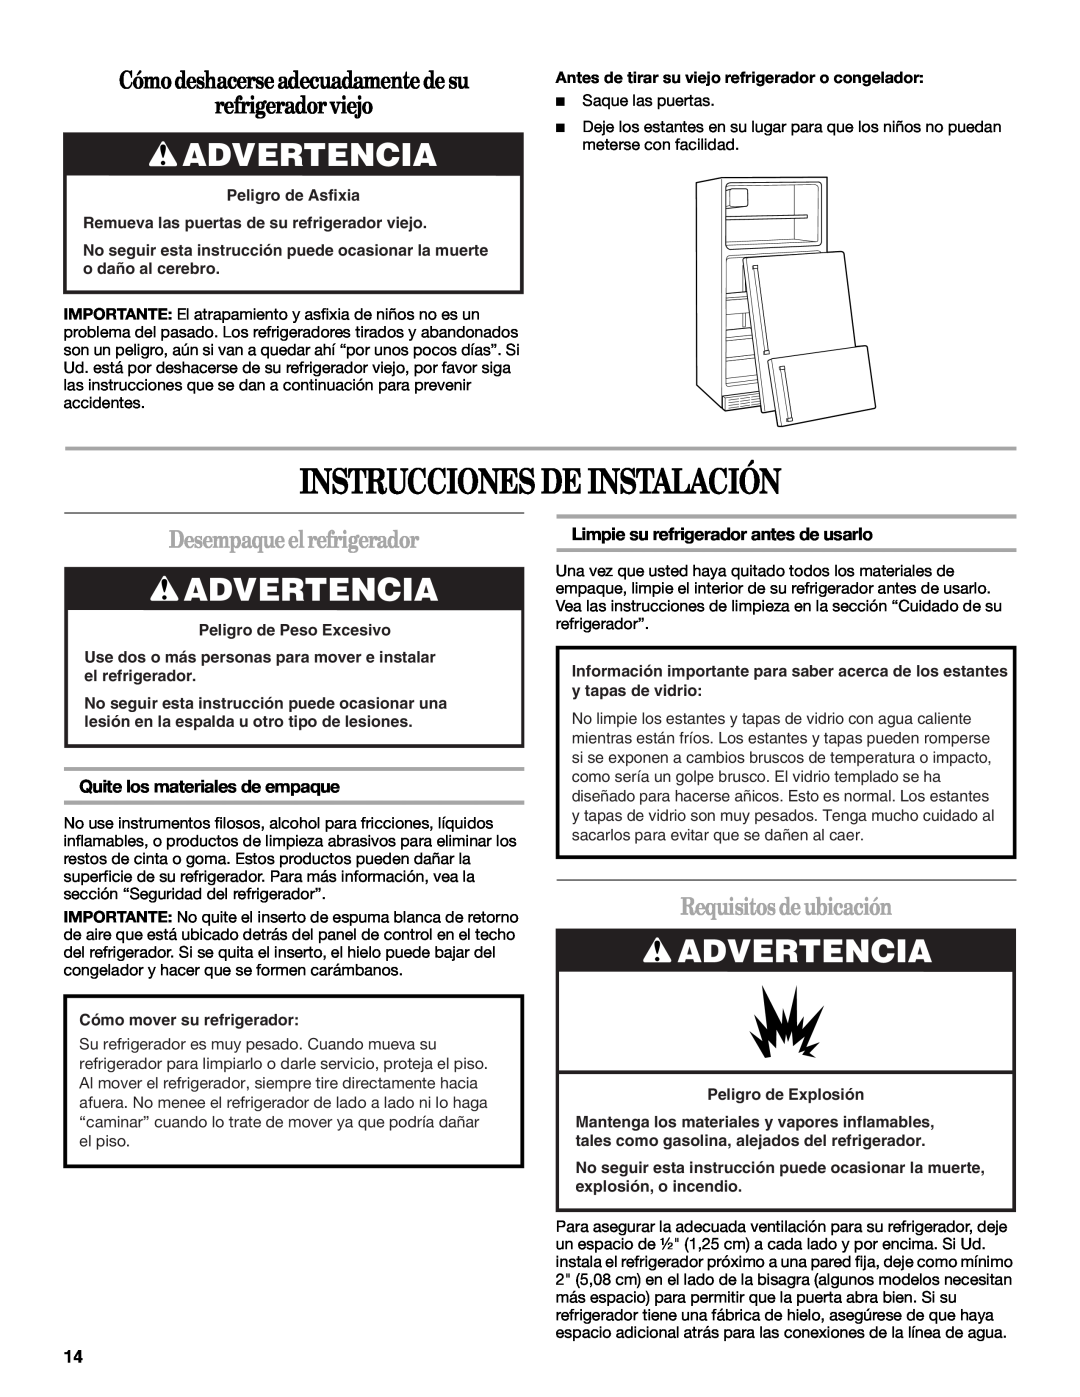 Whirlpool GR2FHMXV Instrucciones De Instalación, Advertencia, Cómo deshacerse adecuadamente de su refrigerador viejo 